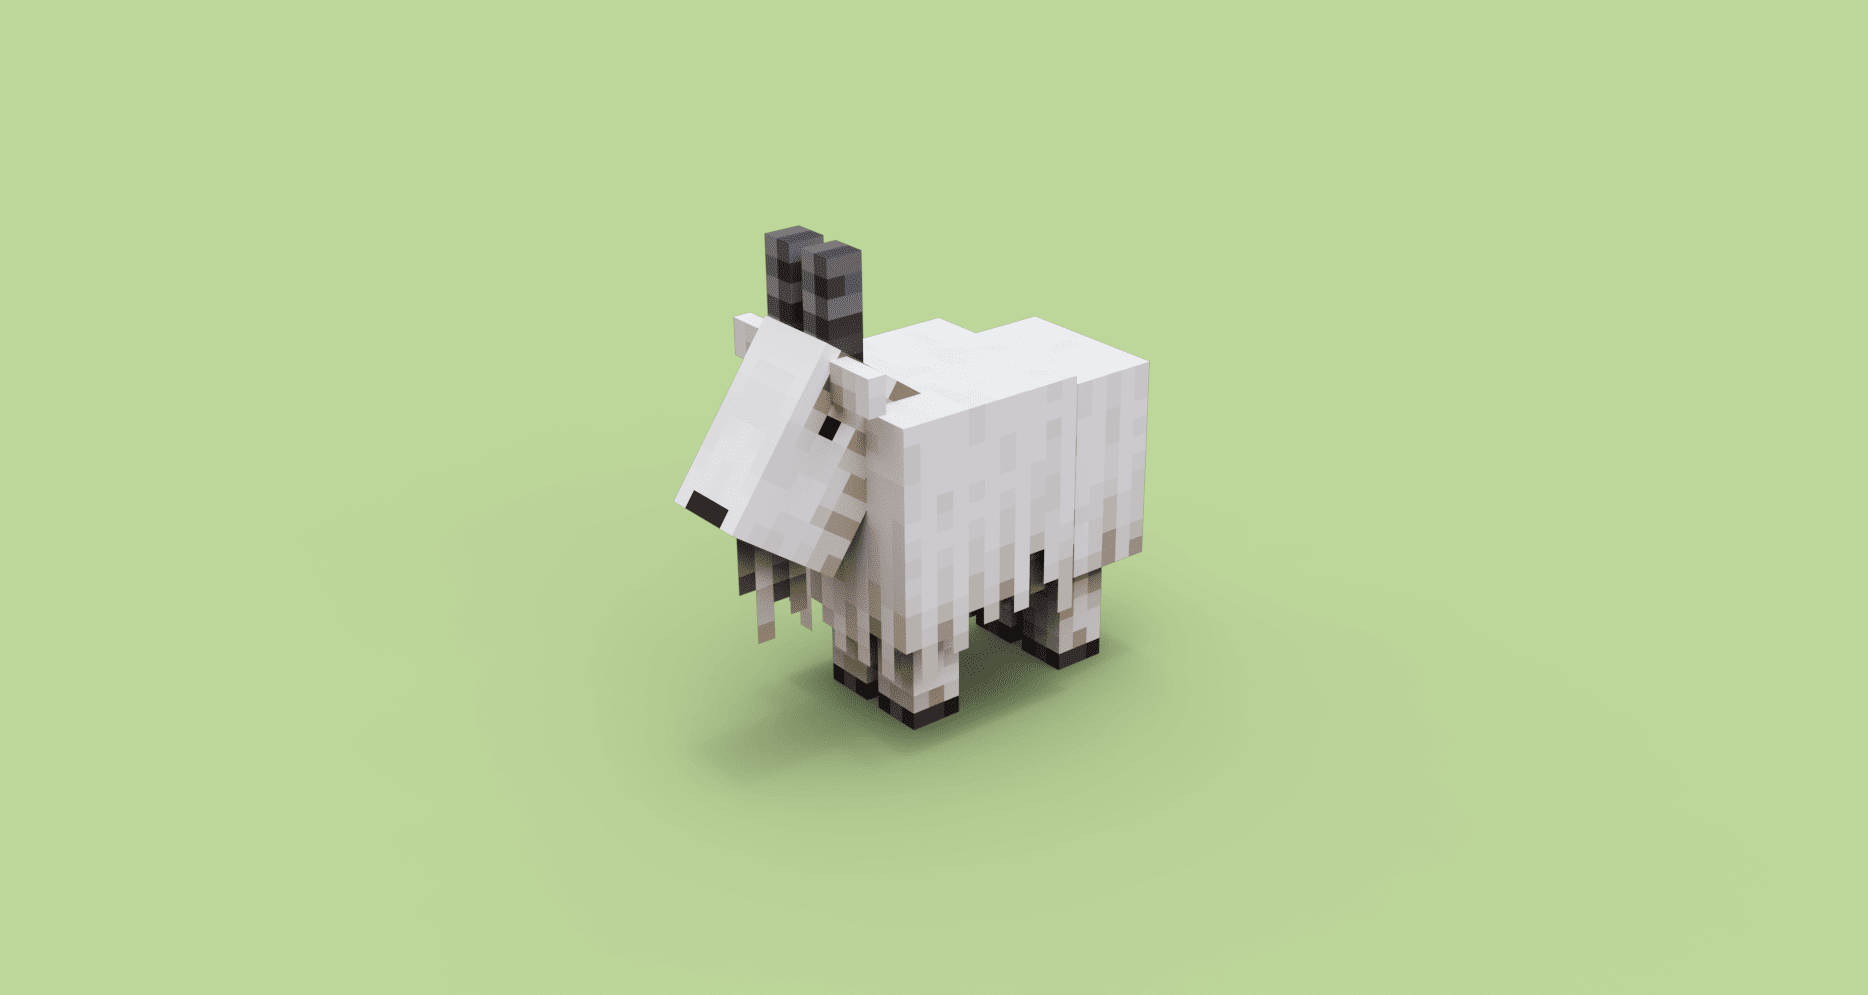 Chú cừu trong Minecraft được thiết kế bằng Blockbench.